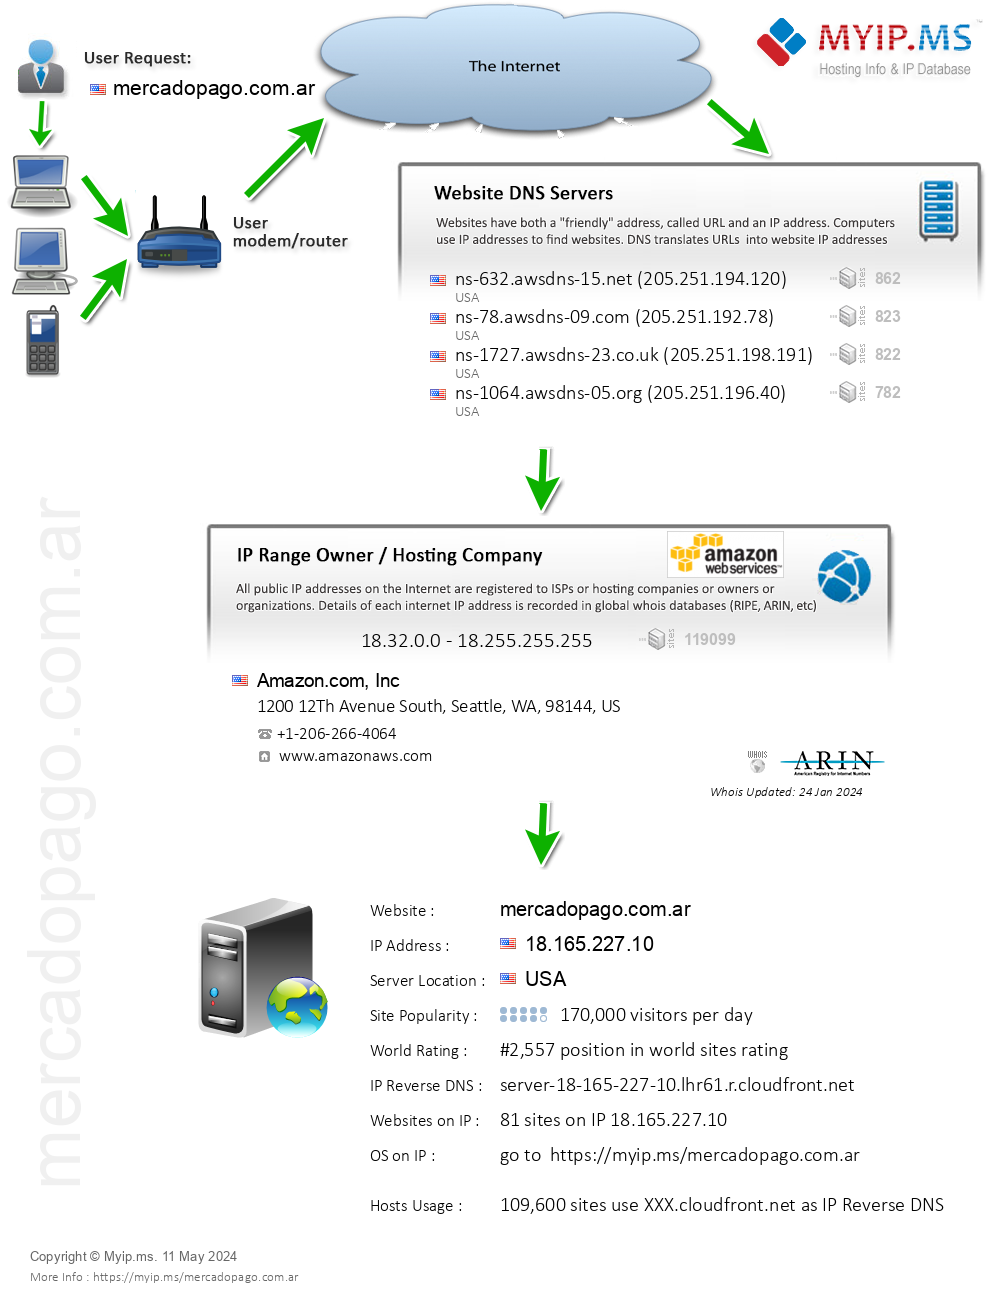 Mercadopago.com.ar - Website Hosting Visual IP Diagram